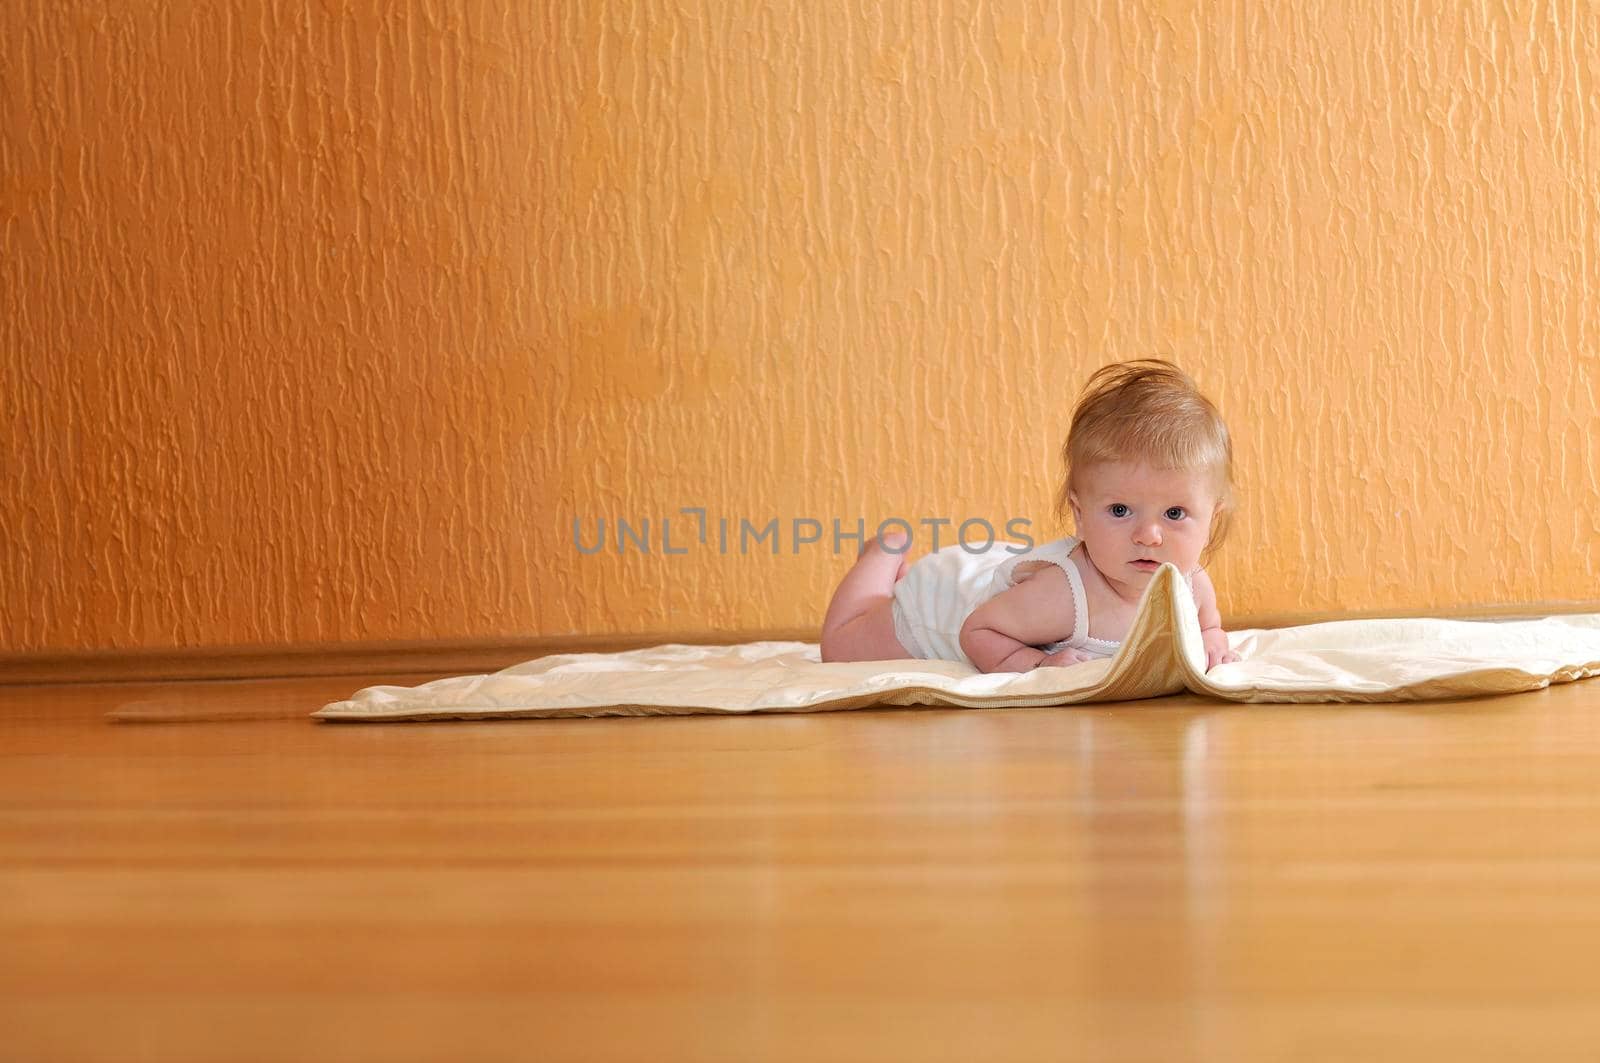 cute little baby indoor closeup portrait